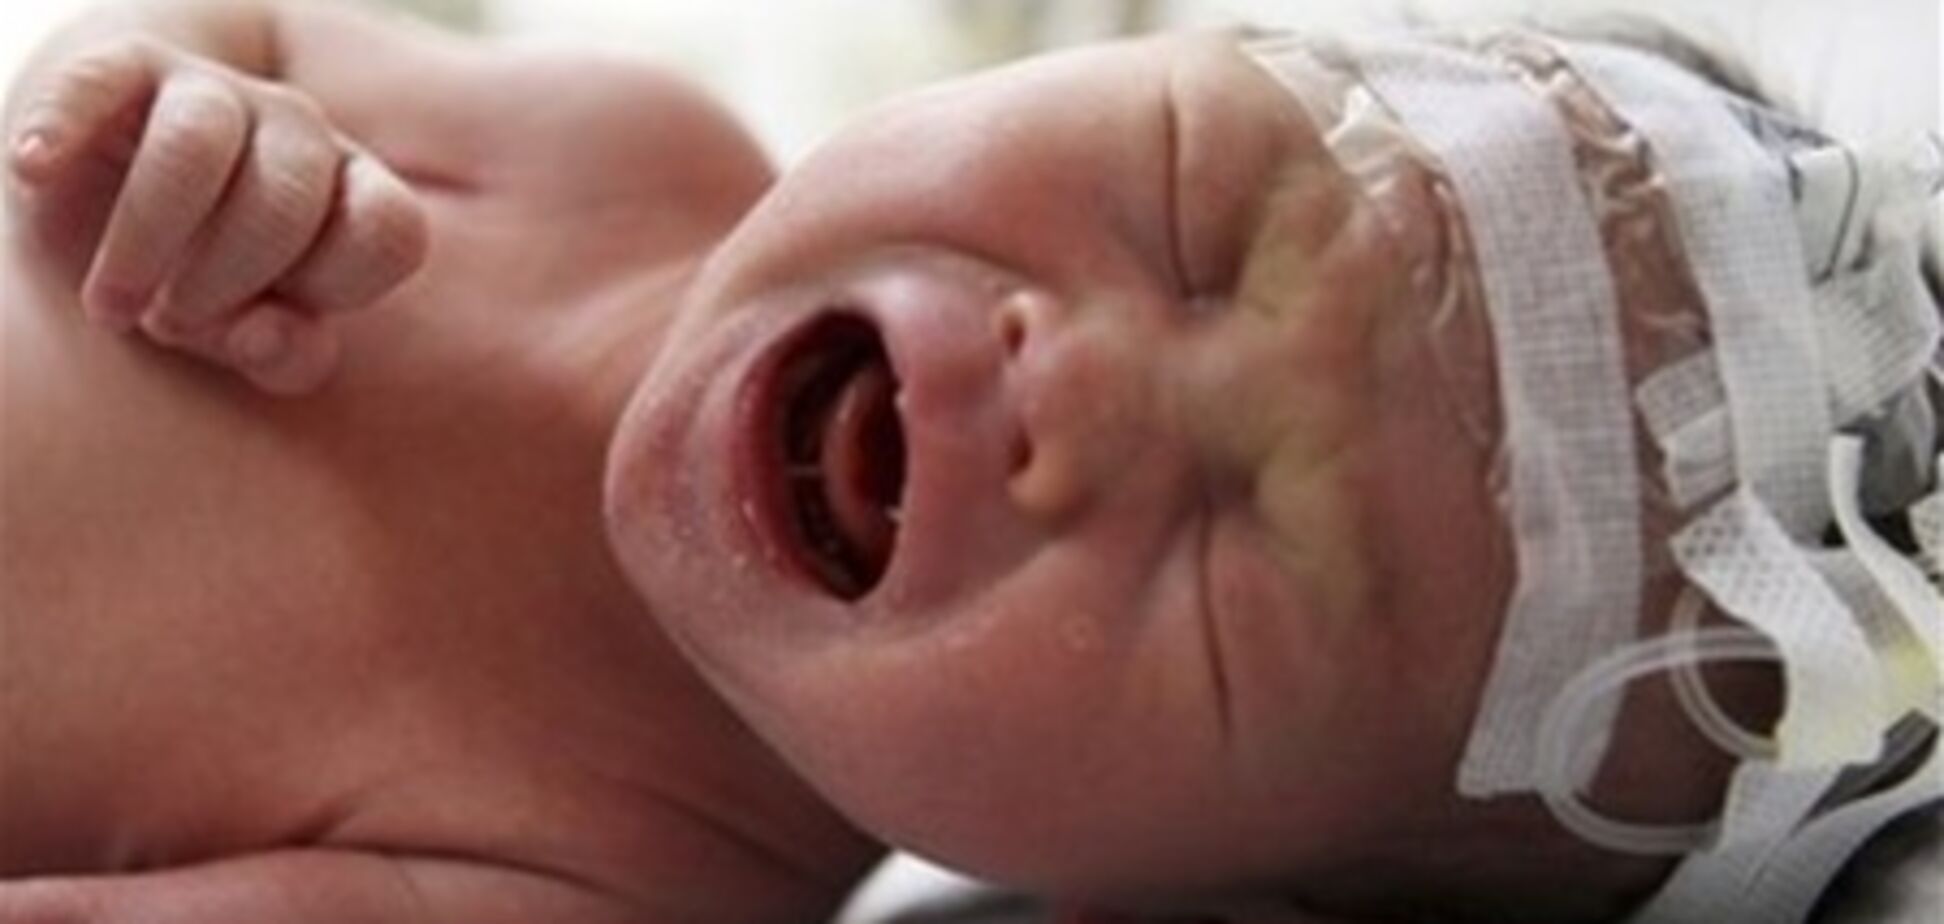 Мать младенца, найденного в канализационной трубе: это 'случайность'